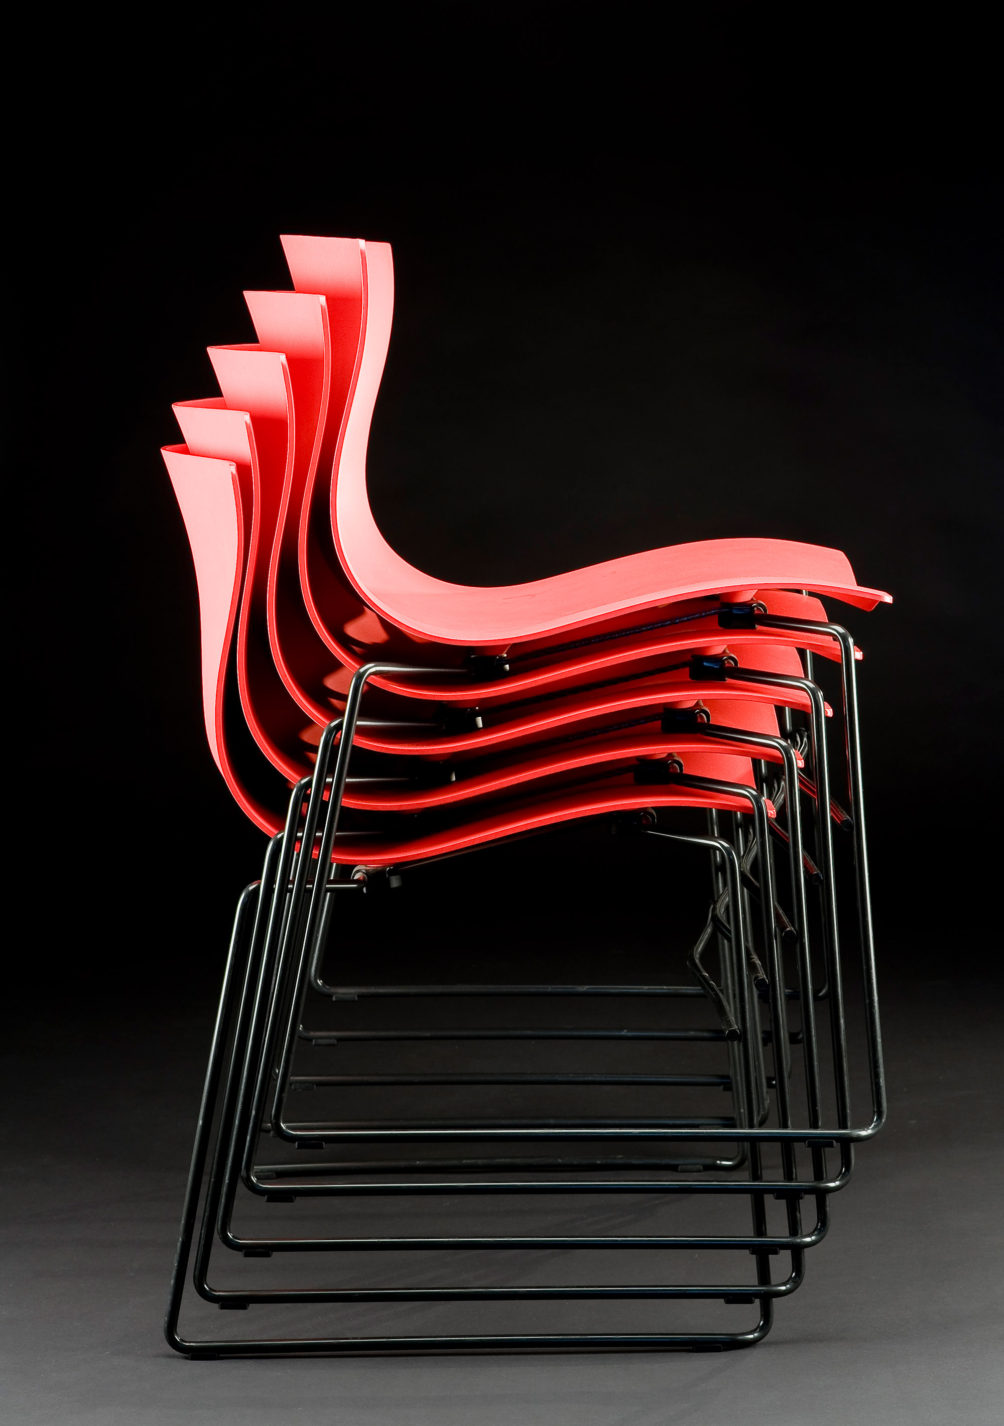 Cinq chaises empilables, chacune dotée d’un siège coquille ondulé en plastique rouge soutenu par des pattes d’acier tubulaire noires.